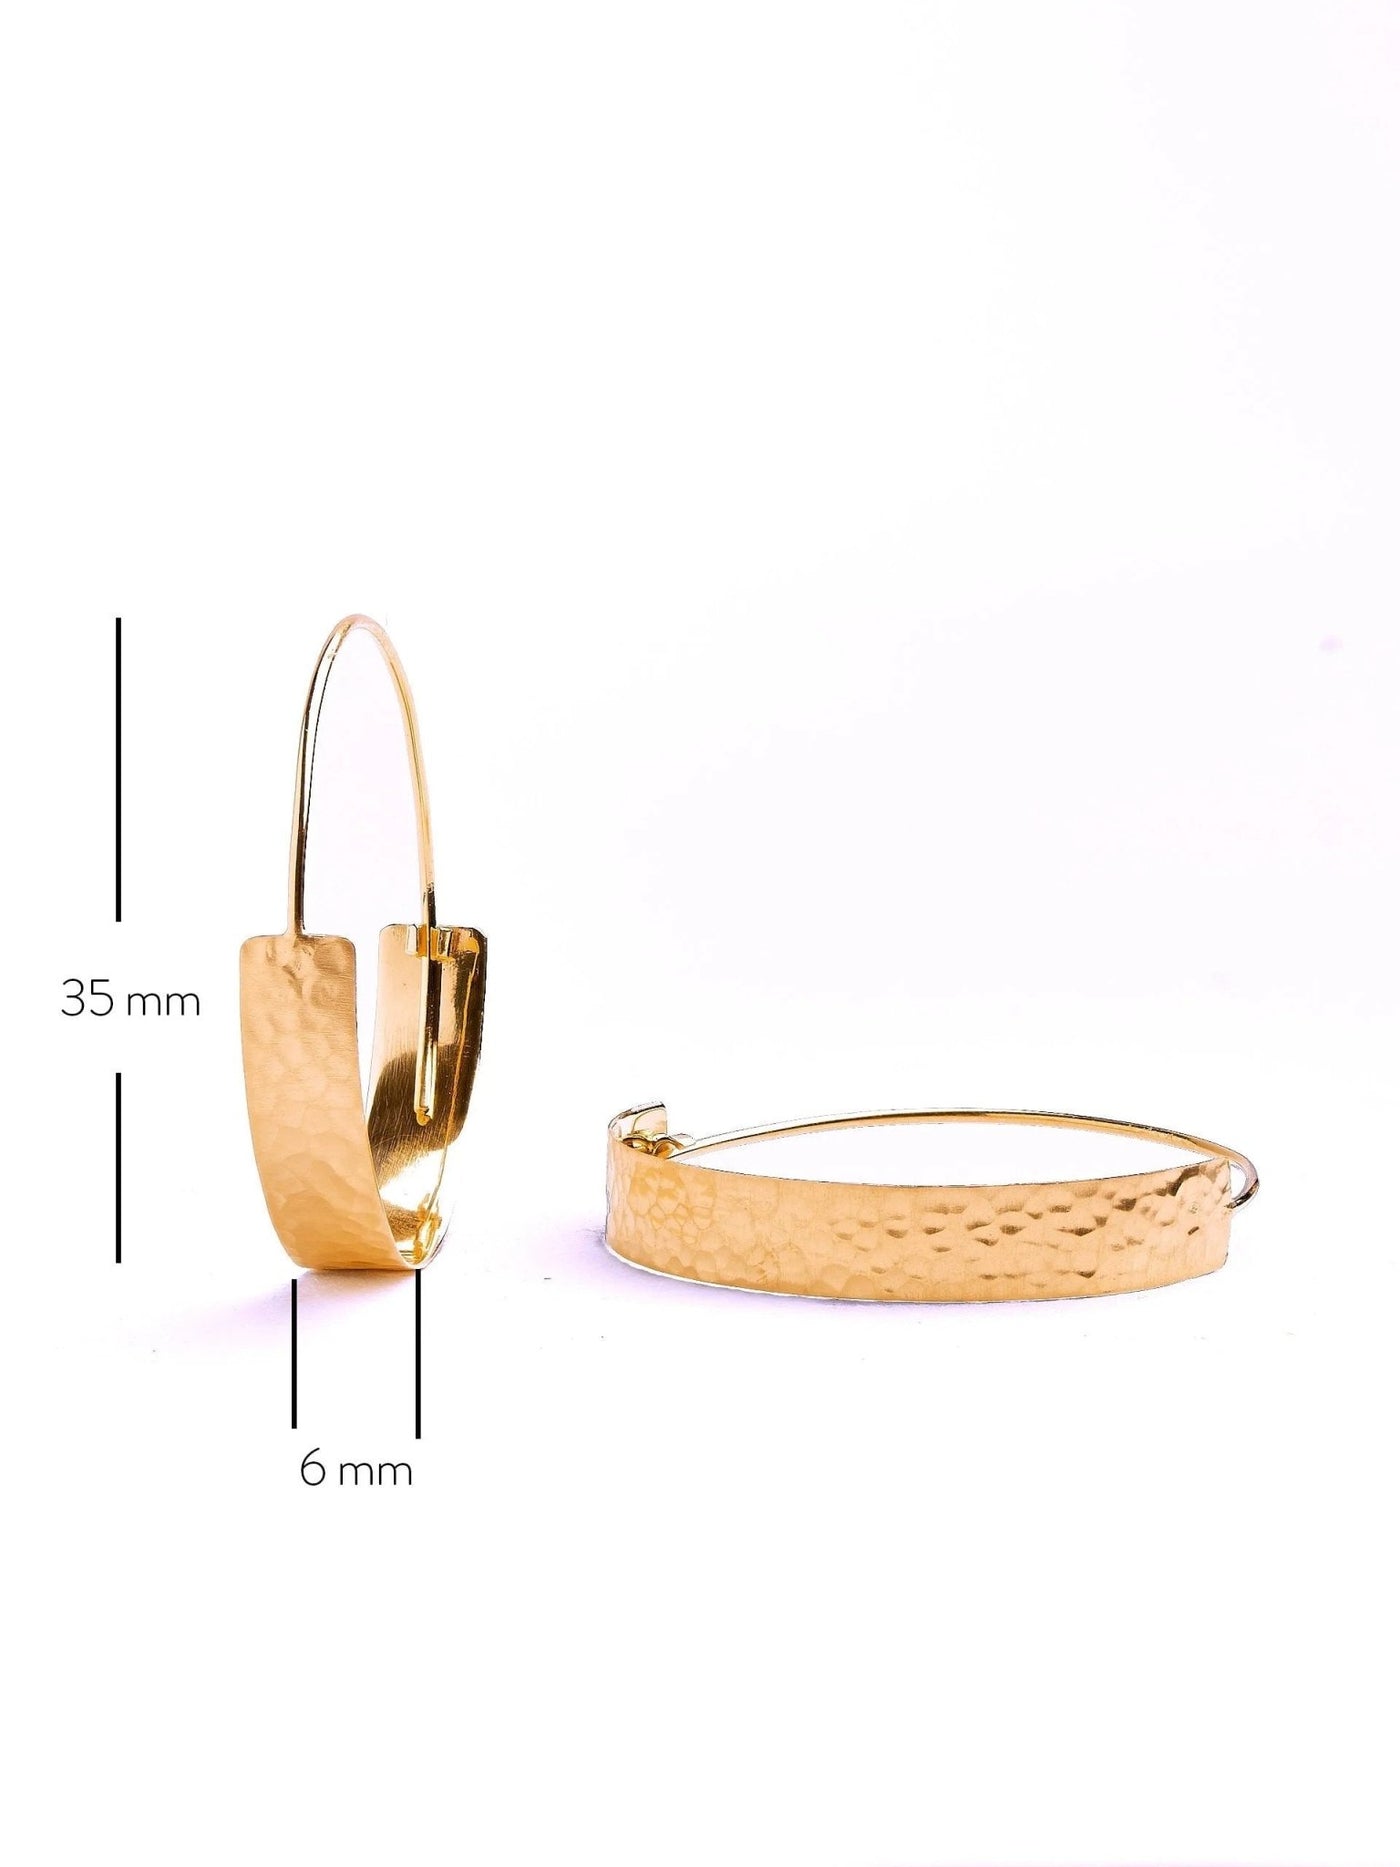 Eibar Chunky Gold Hoop Earrings - 24K Gold Mattebest selling itemsBoho EarringsLunai Jewelry